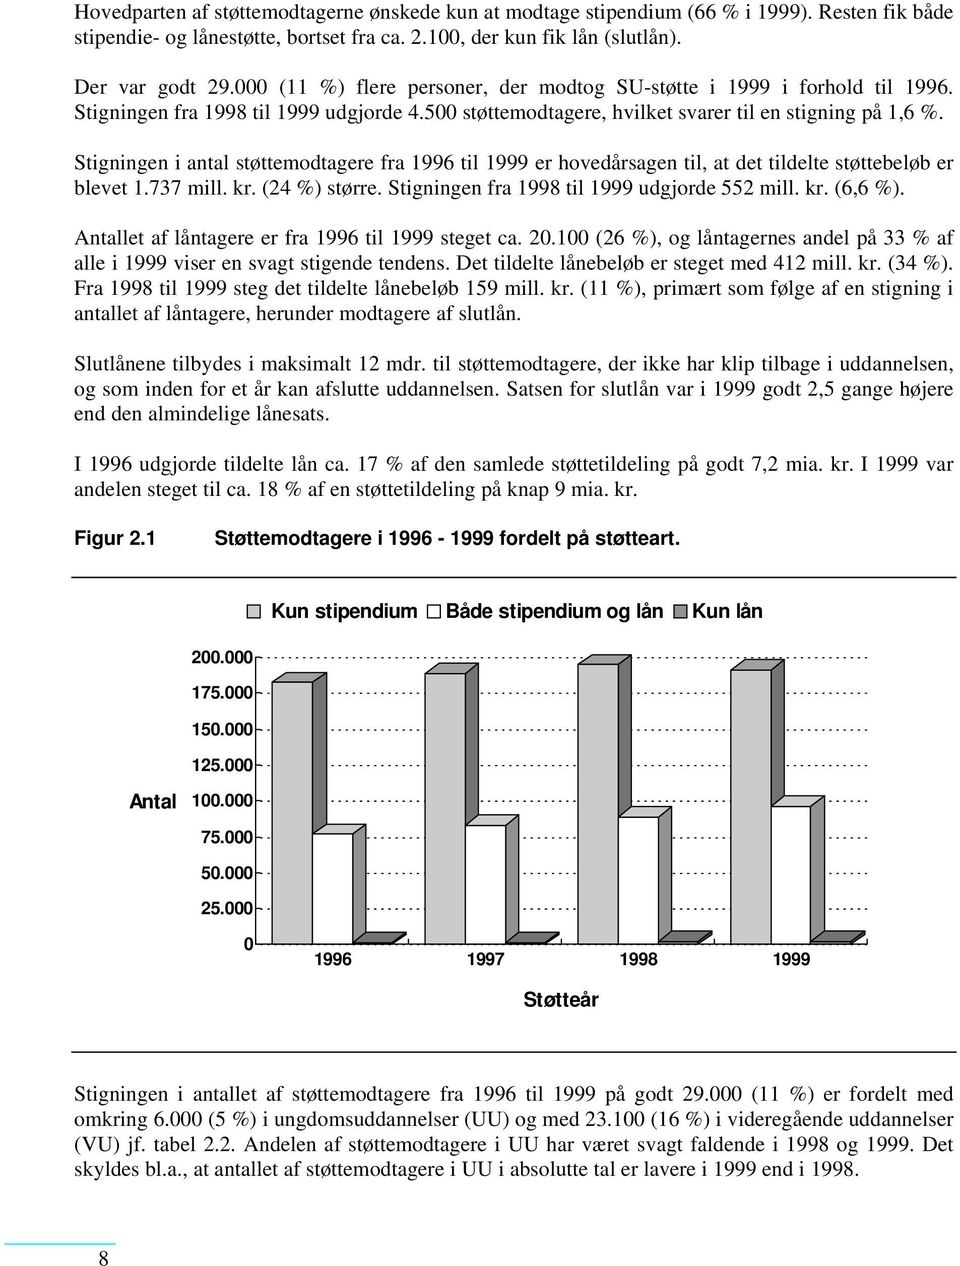 Stigningen i antal støttemodtagere fra 1996 til 1999 er hovedårsagen til, at det tildelte støttebeløb er blevet 1.737 mill. kr. (24 %) større. Stigningen fra 1998 til 1999 udgjorde 552 mill. kr. (6,6 %).